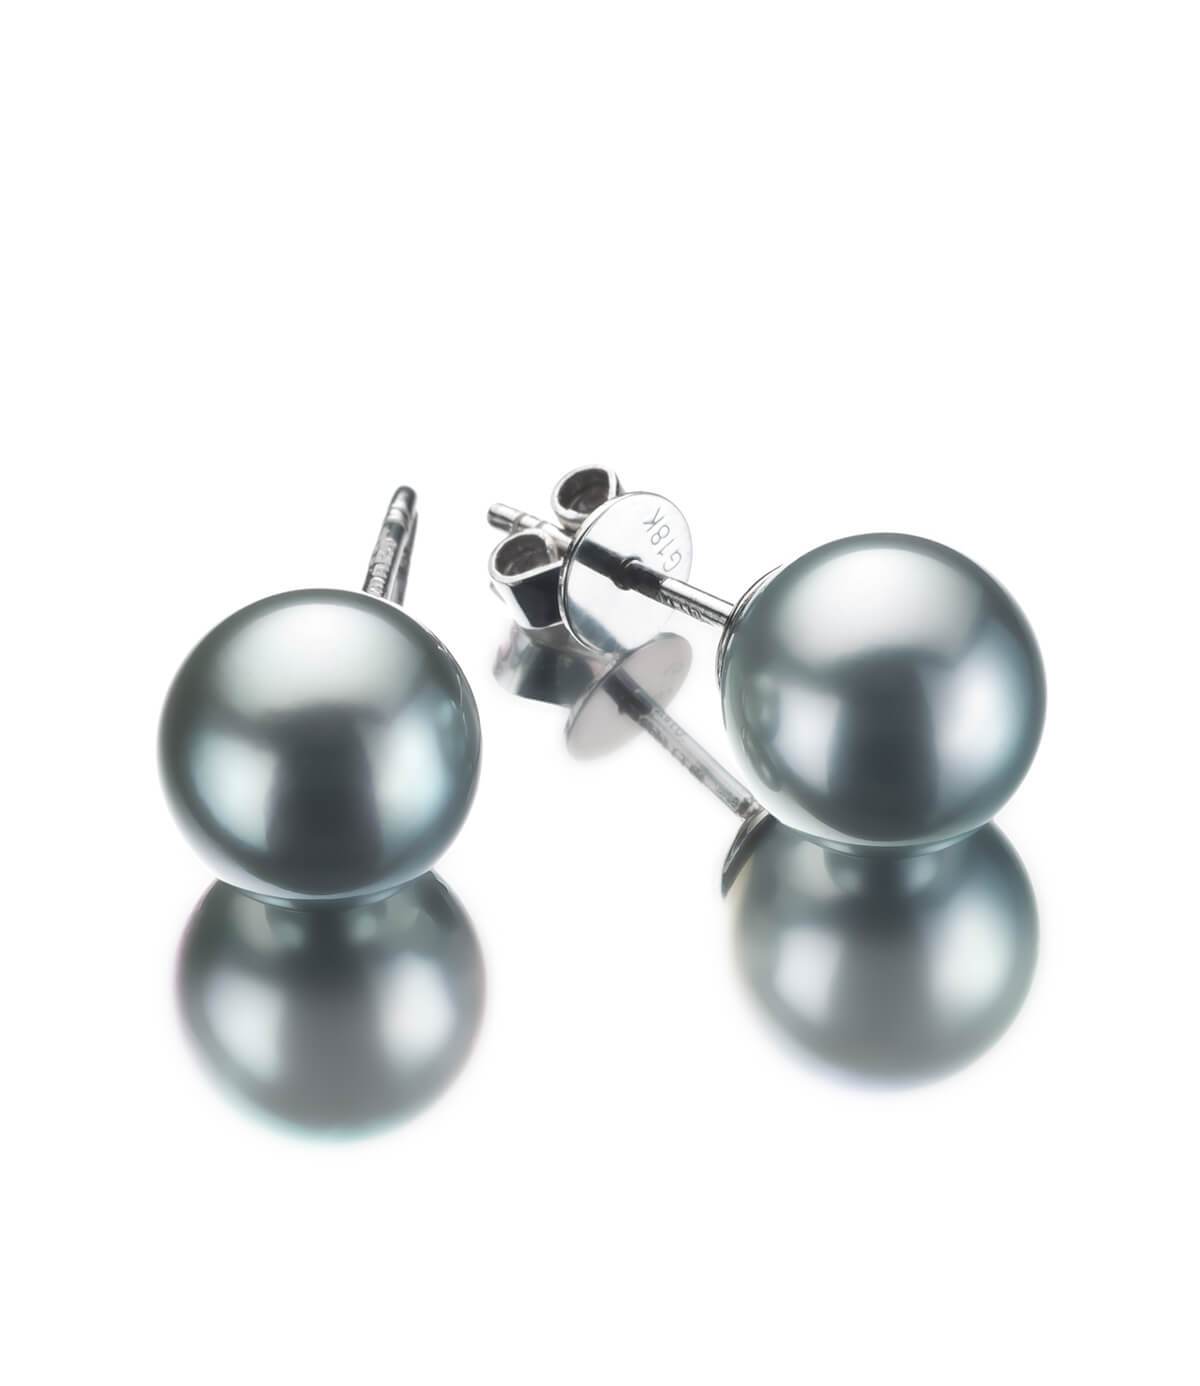 metallic black pearl earrings silver gray in 18k white gold